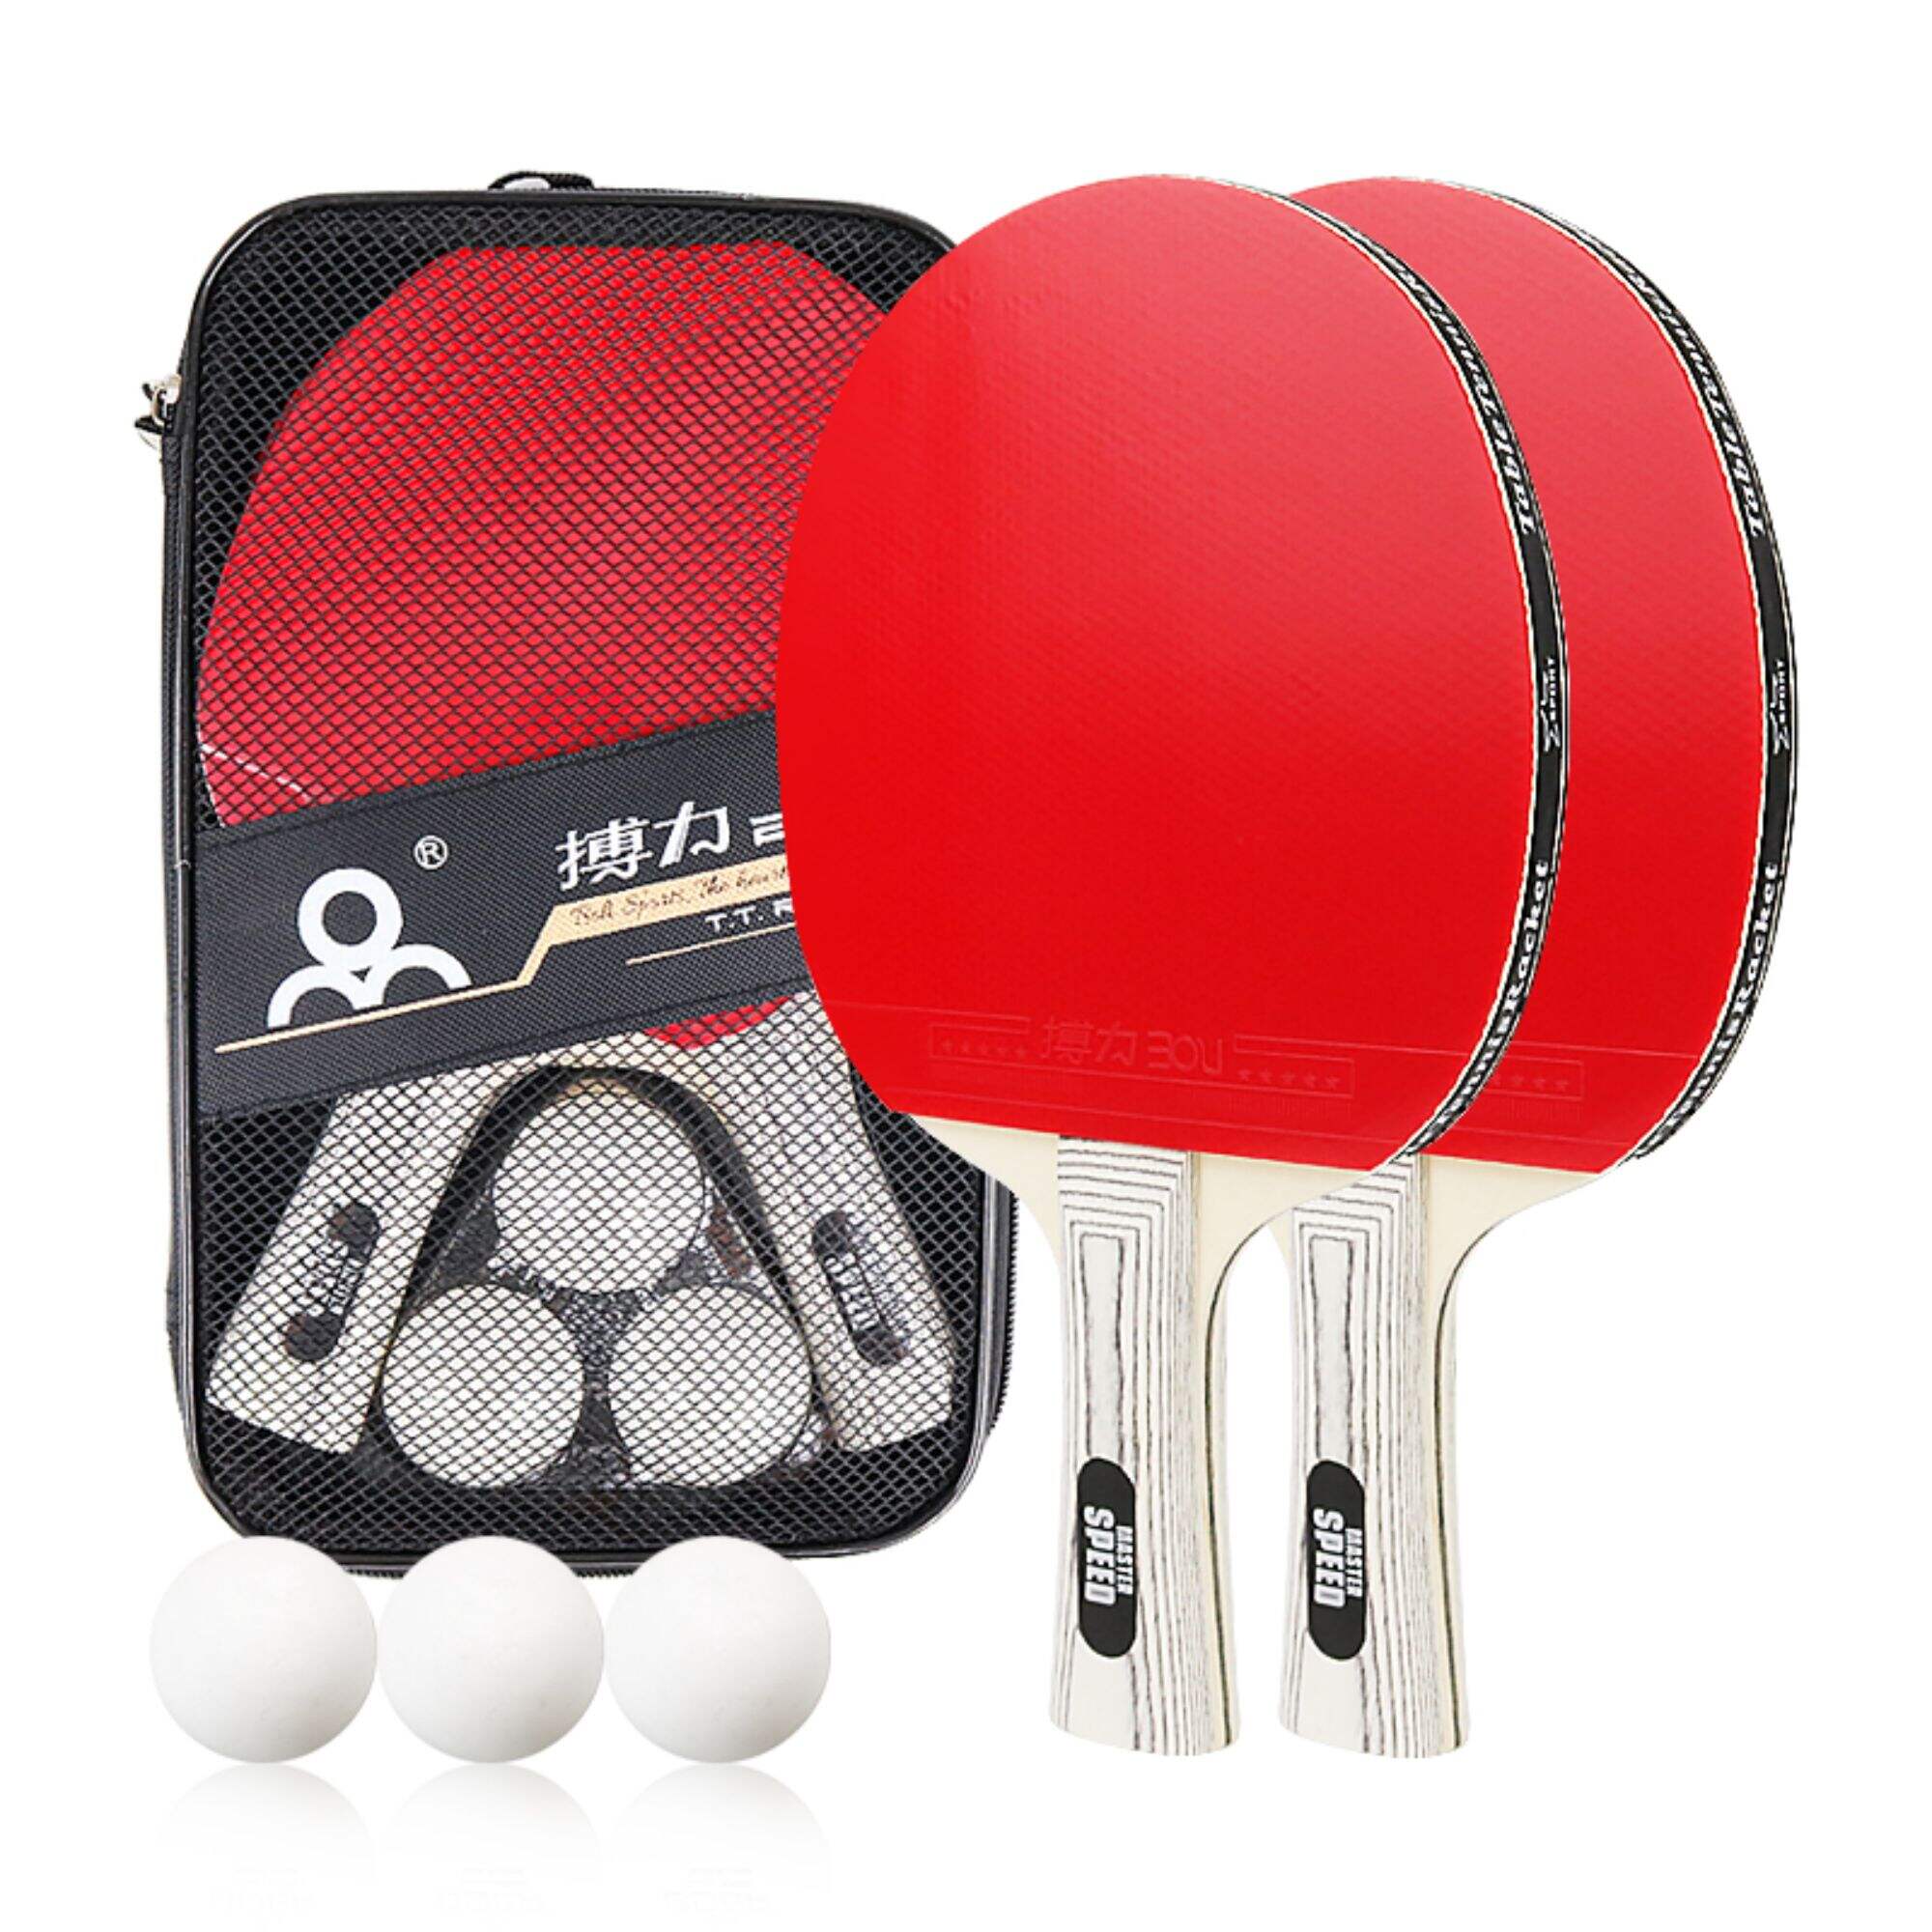 E21 Boli Poplar Table Tennis Racket Cover Bag Paddle Set